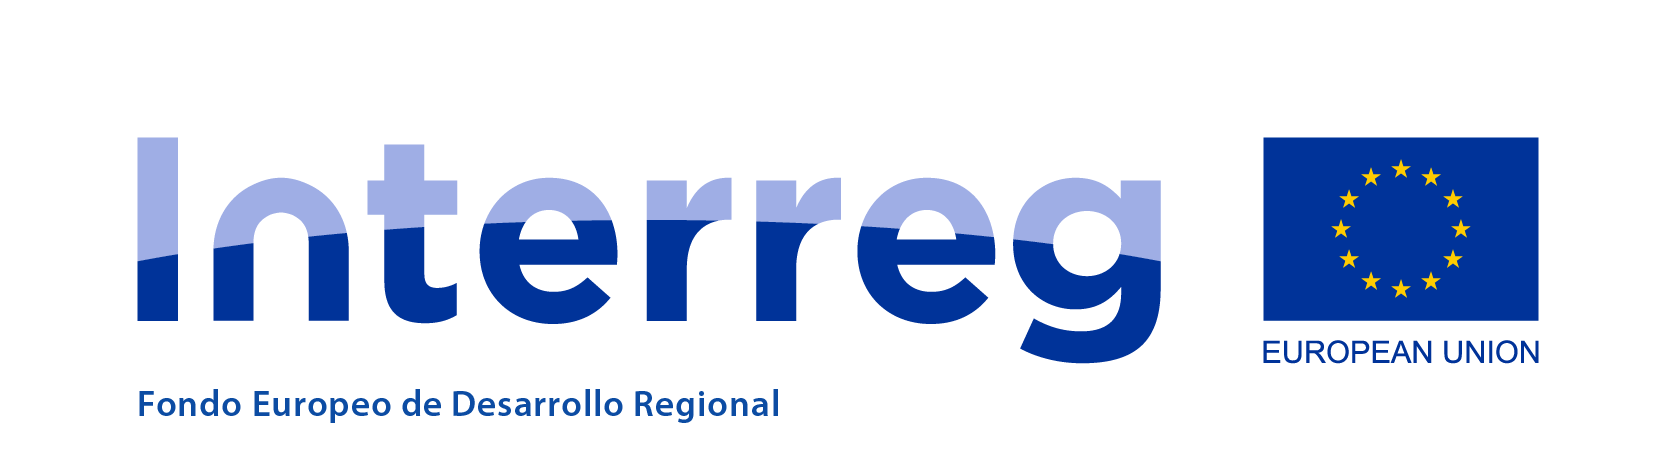 Interreg - Fondo Europeo de Desarrollo Regional